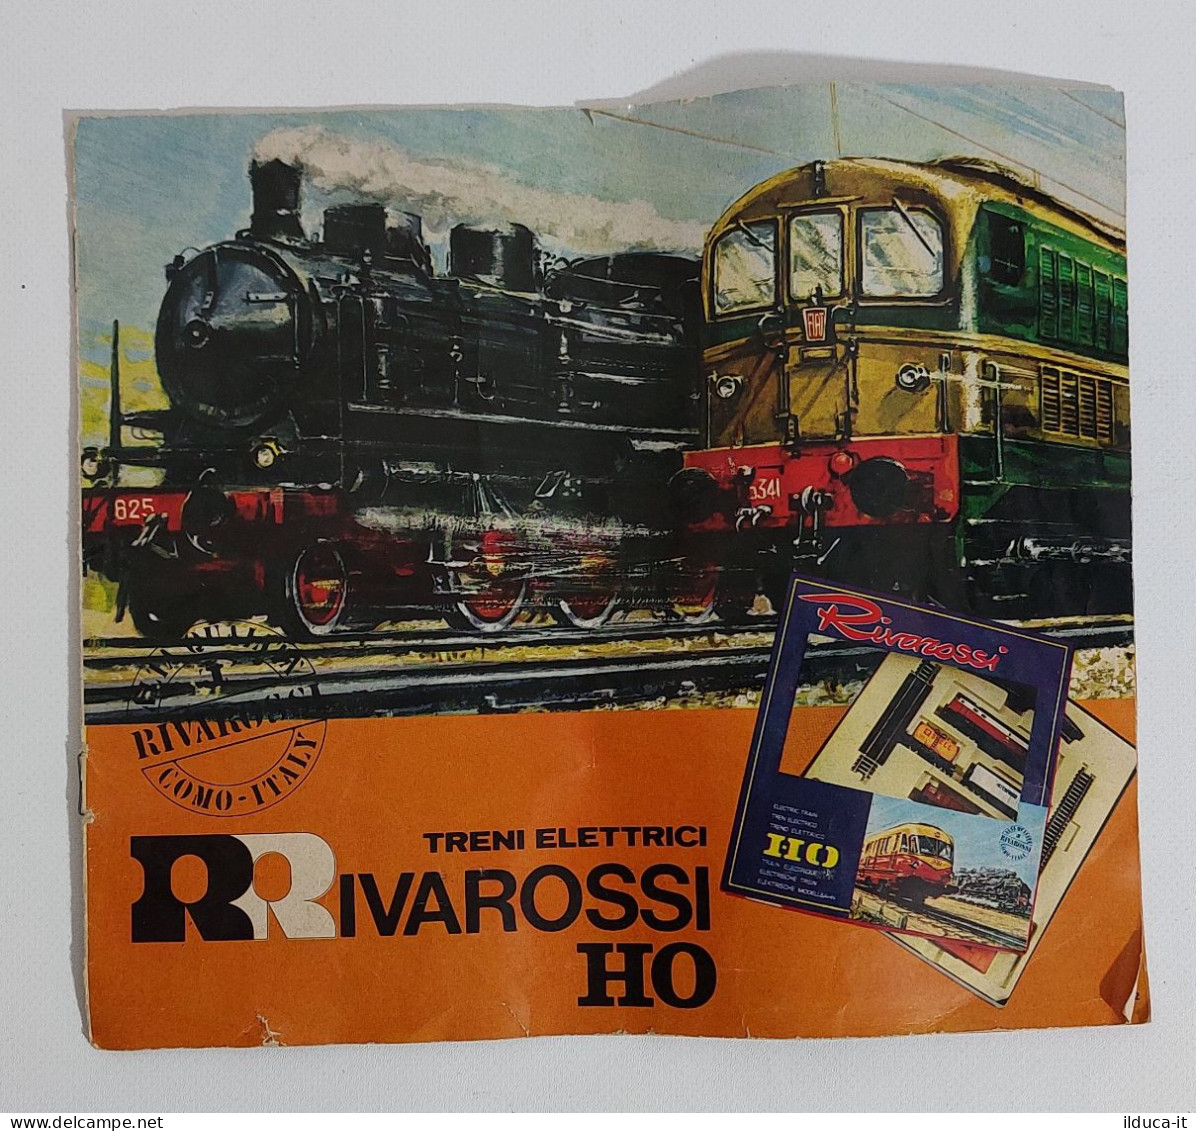 44541 Catalogo Modellismo Ferroviario Rivarossi H0 - Edizione 1965 - Italy